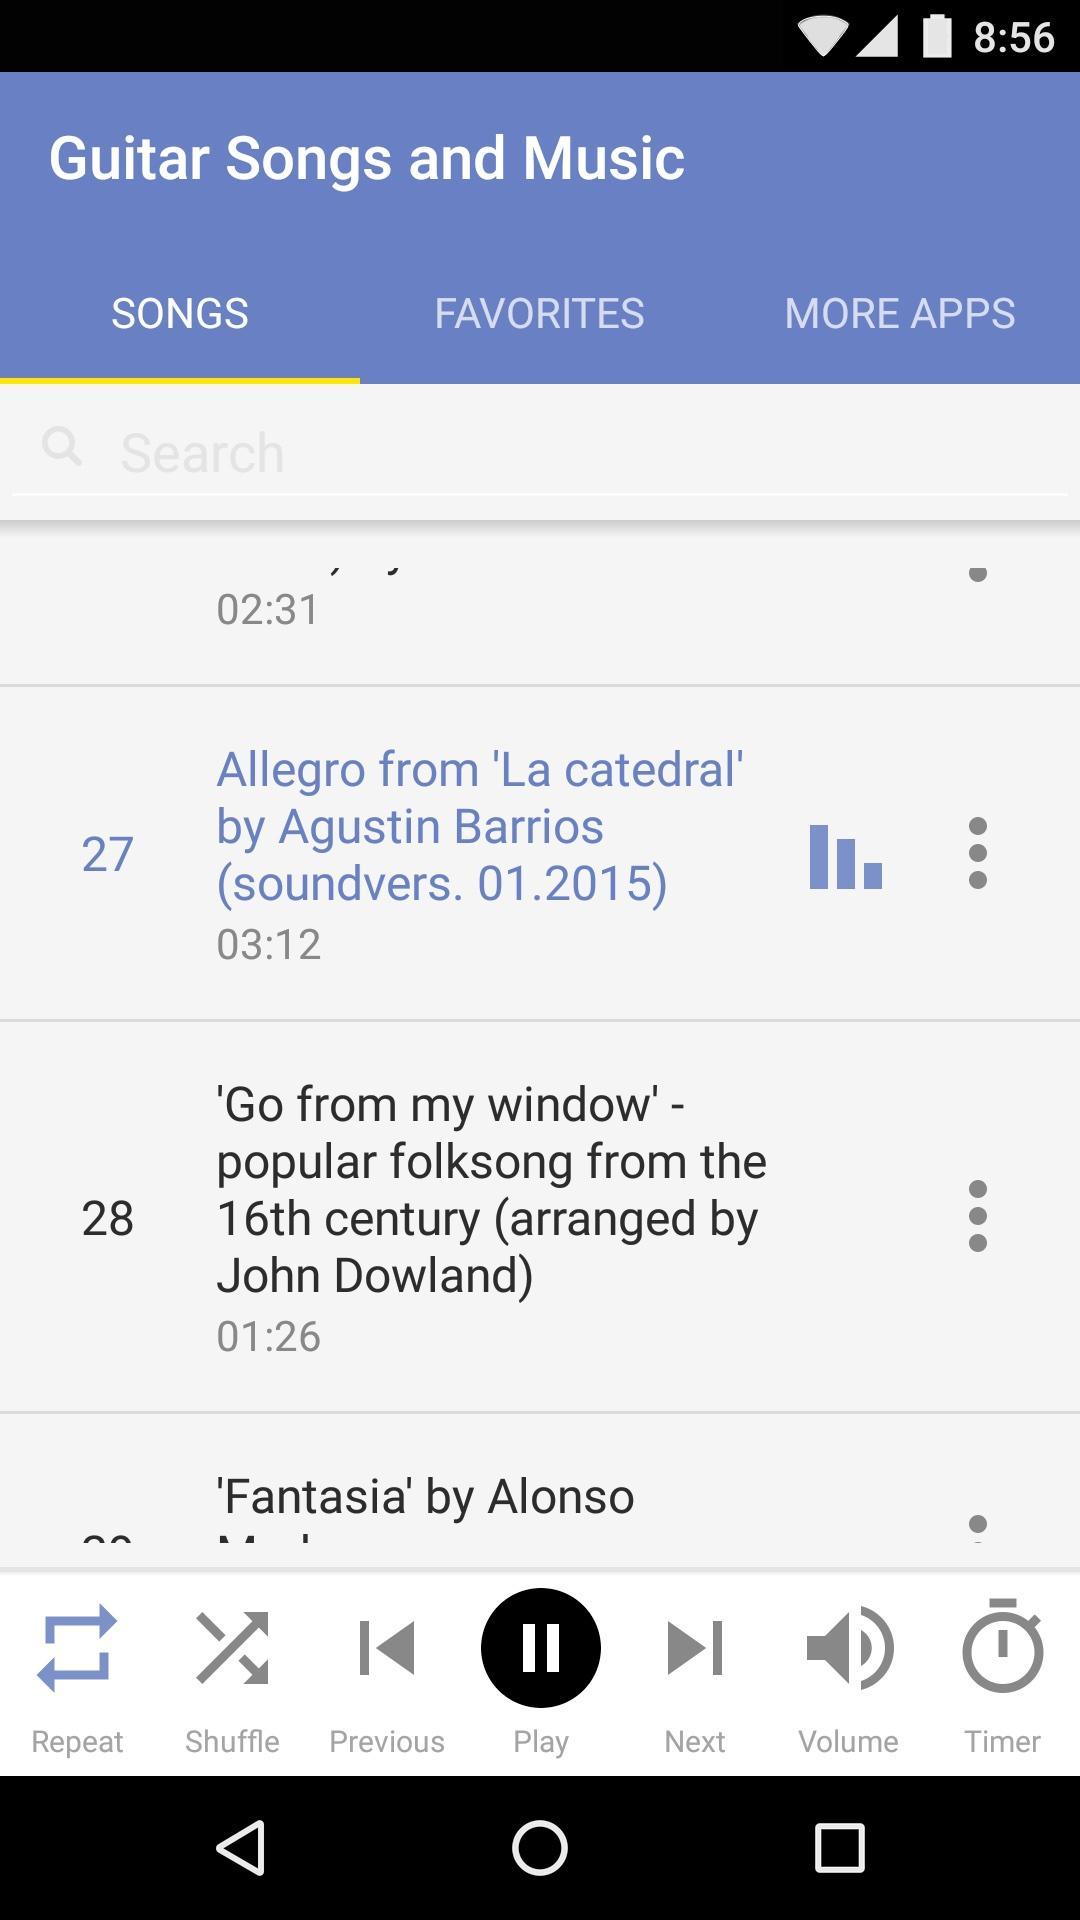 Darmowe Piosenki Na Gitare For Android Apk Download - czego mozesz sie nauczyc grajac w roblox allegro pl